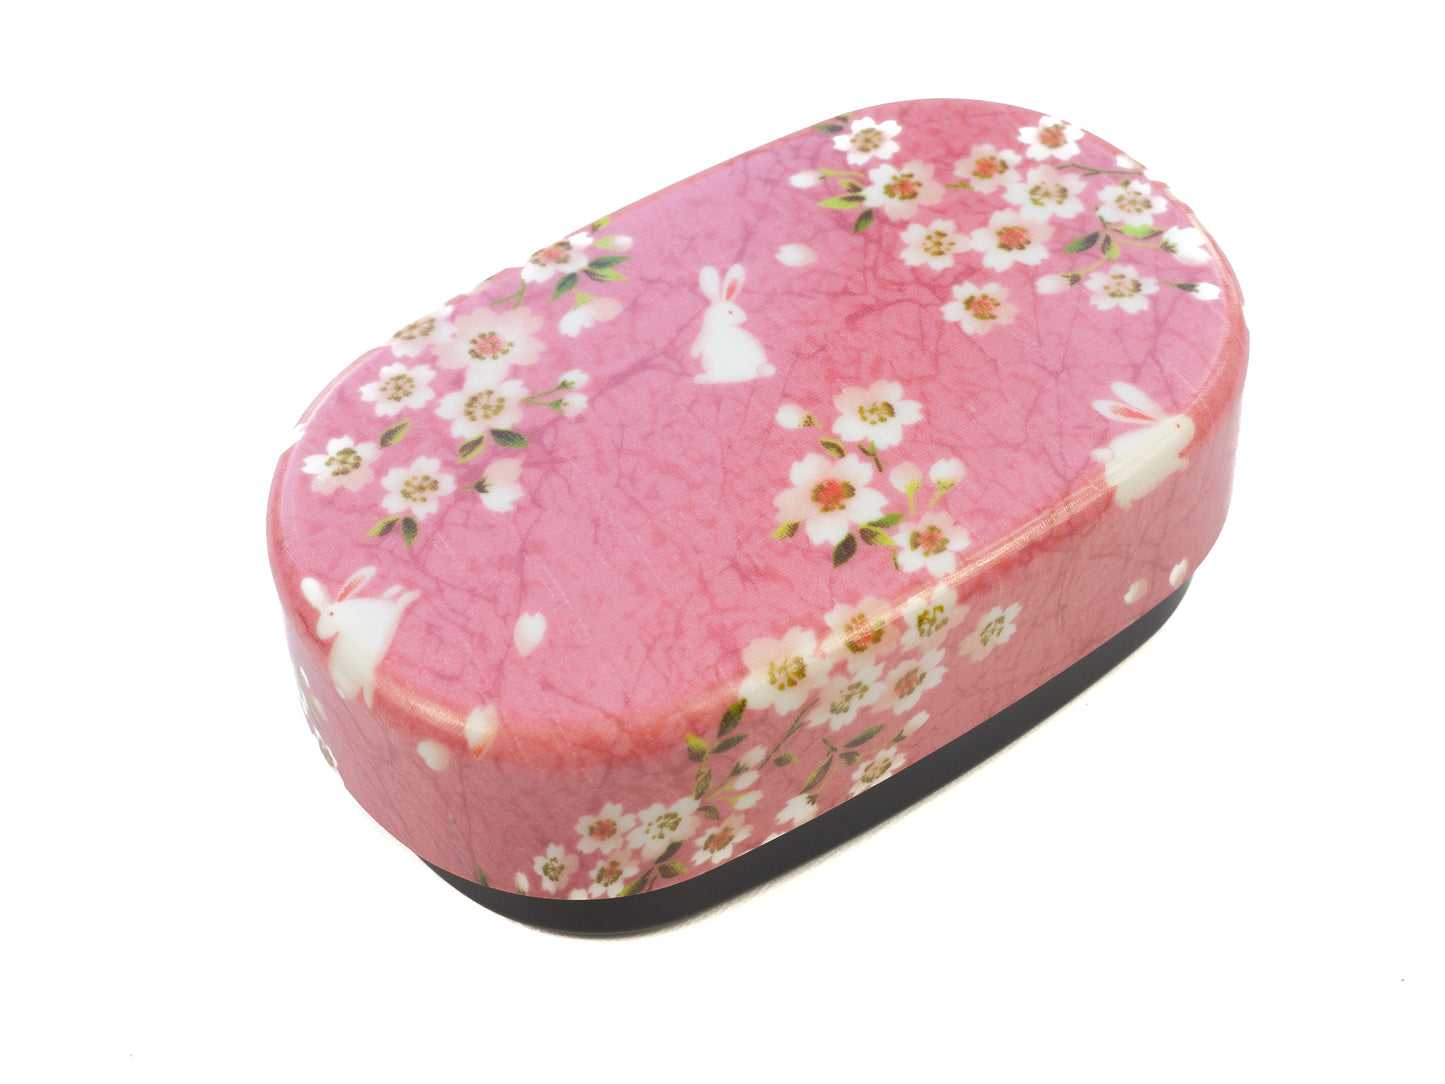 Sakura Rabbit ovale Bento-Box 570 ml | Rosa